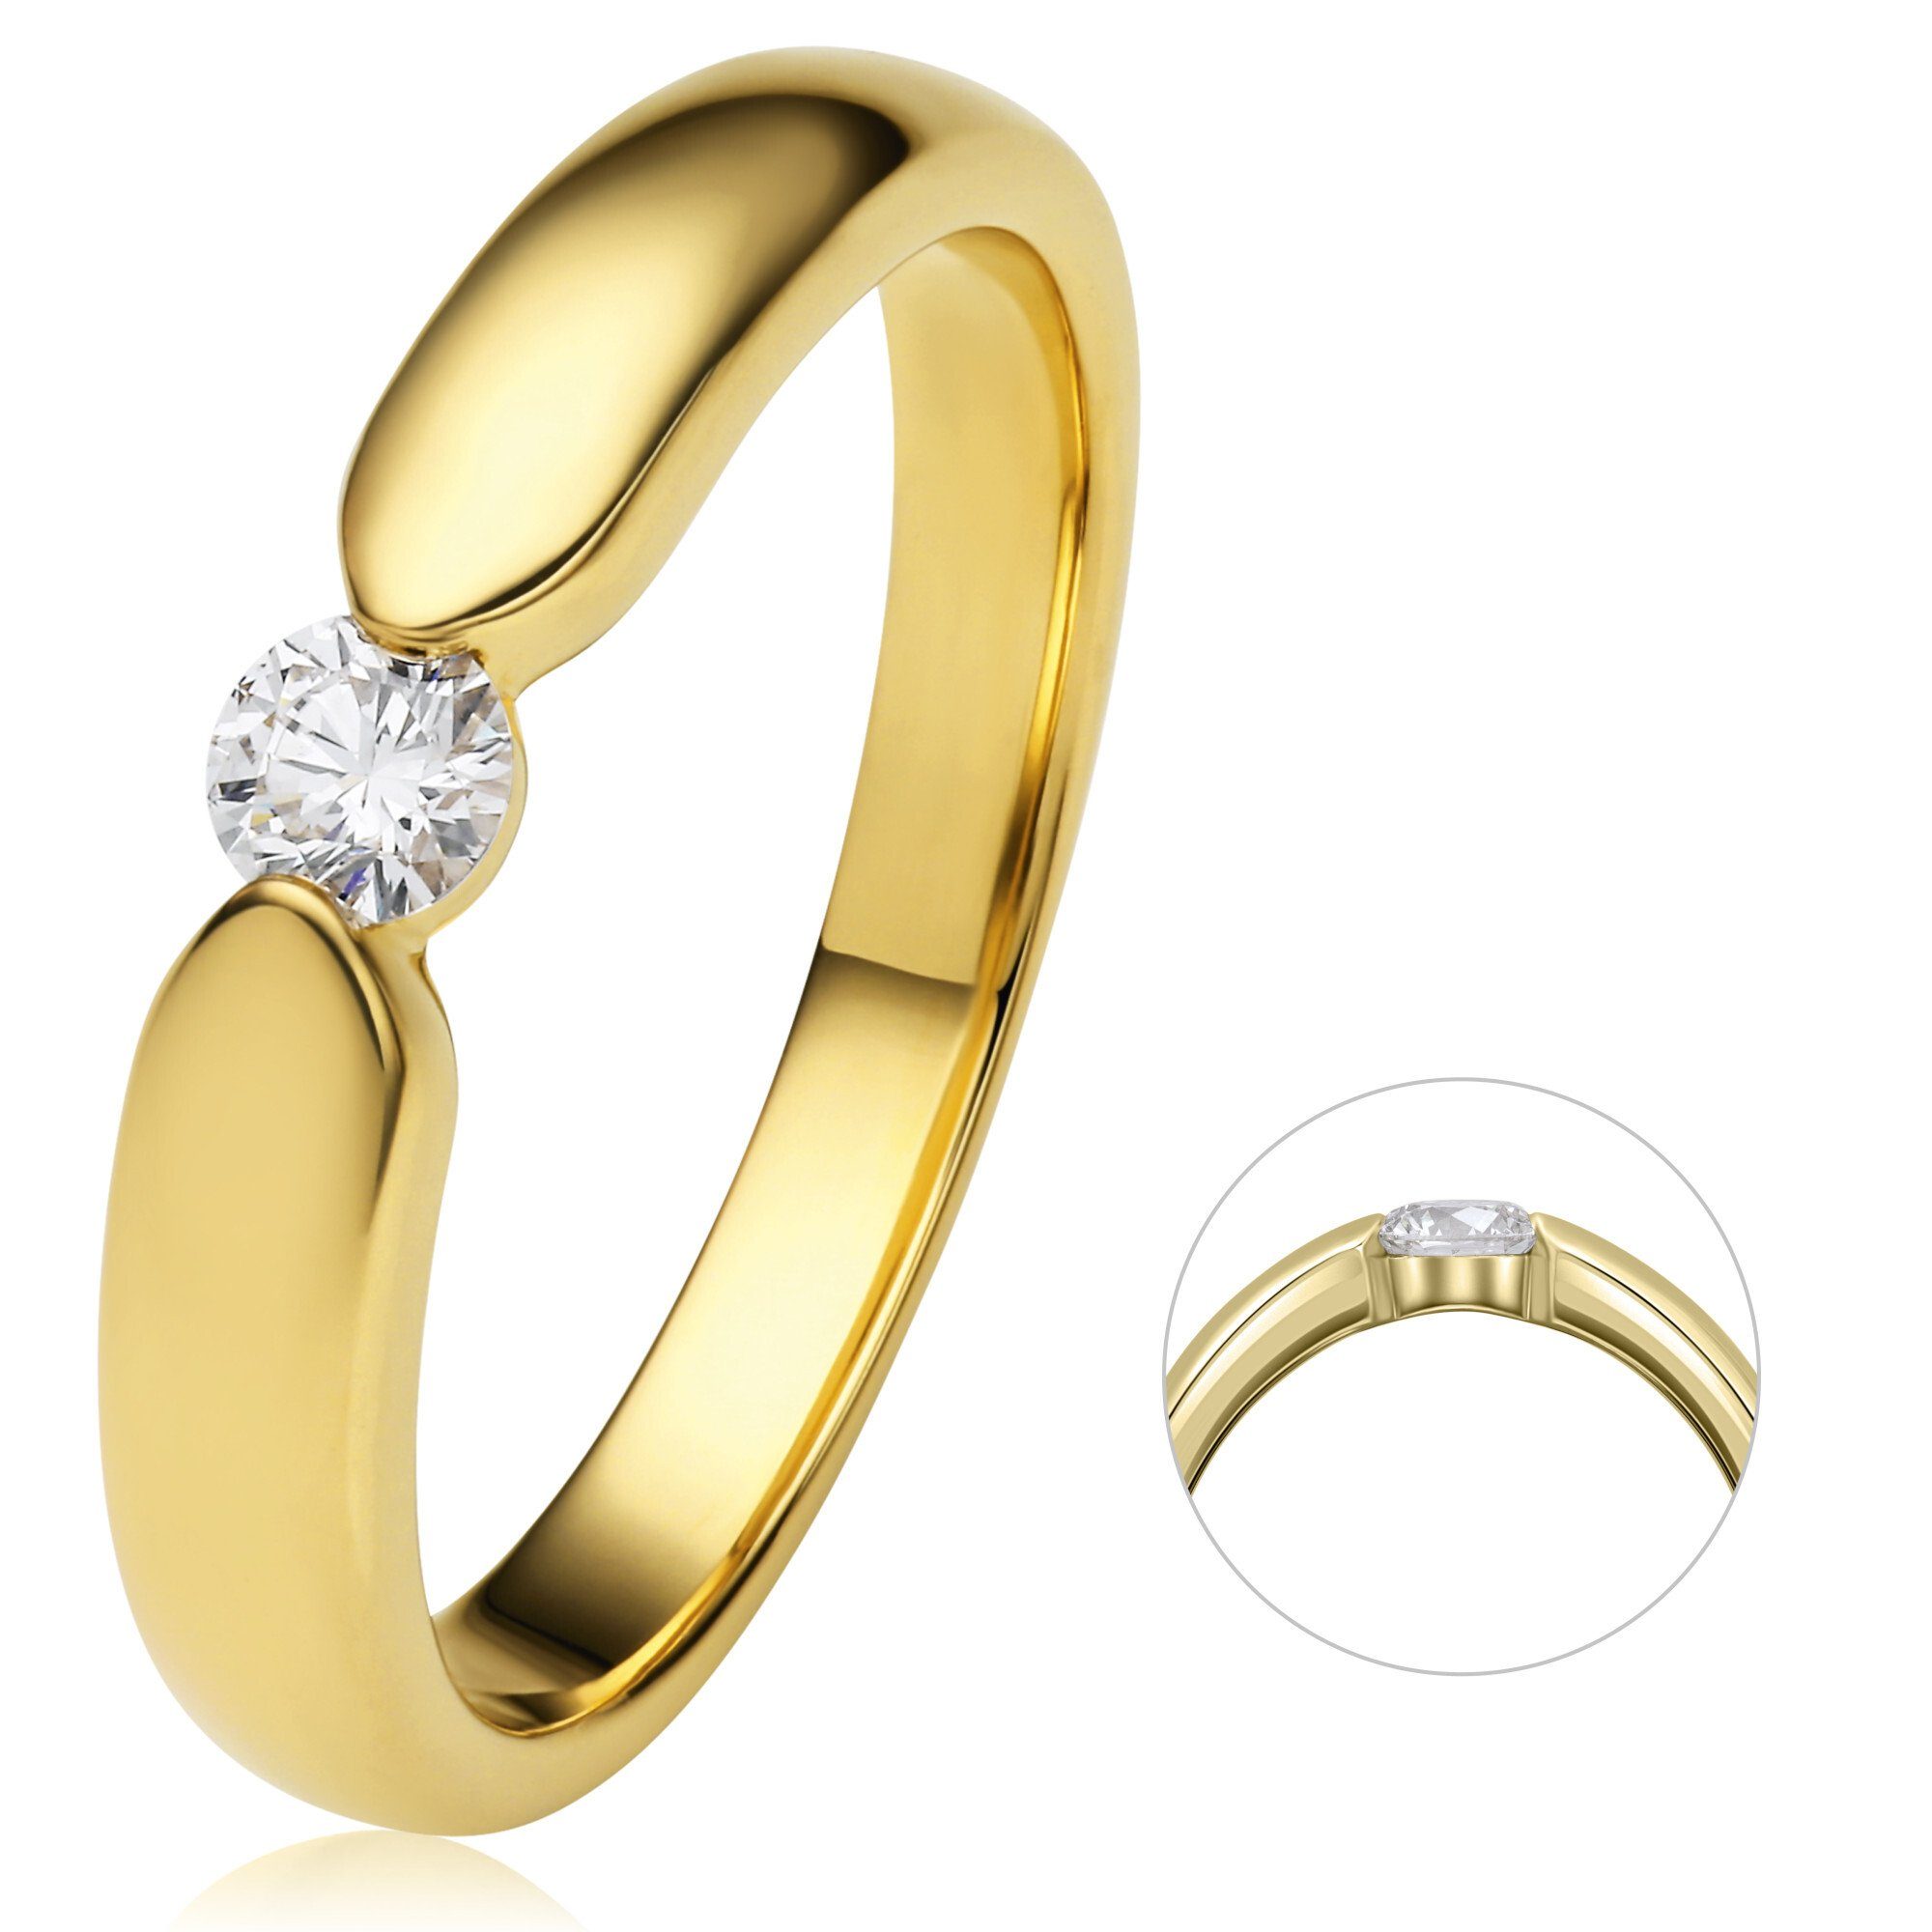 ONE ELEMENT Diamantring 0.17 ct Diamant Brillant Spannfassung Ring aus 750 Gelbgold, Damen Gold Schmuck Spannfassung